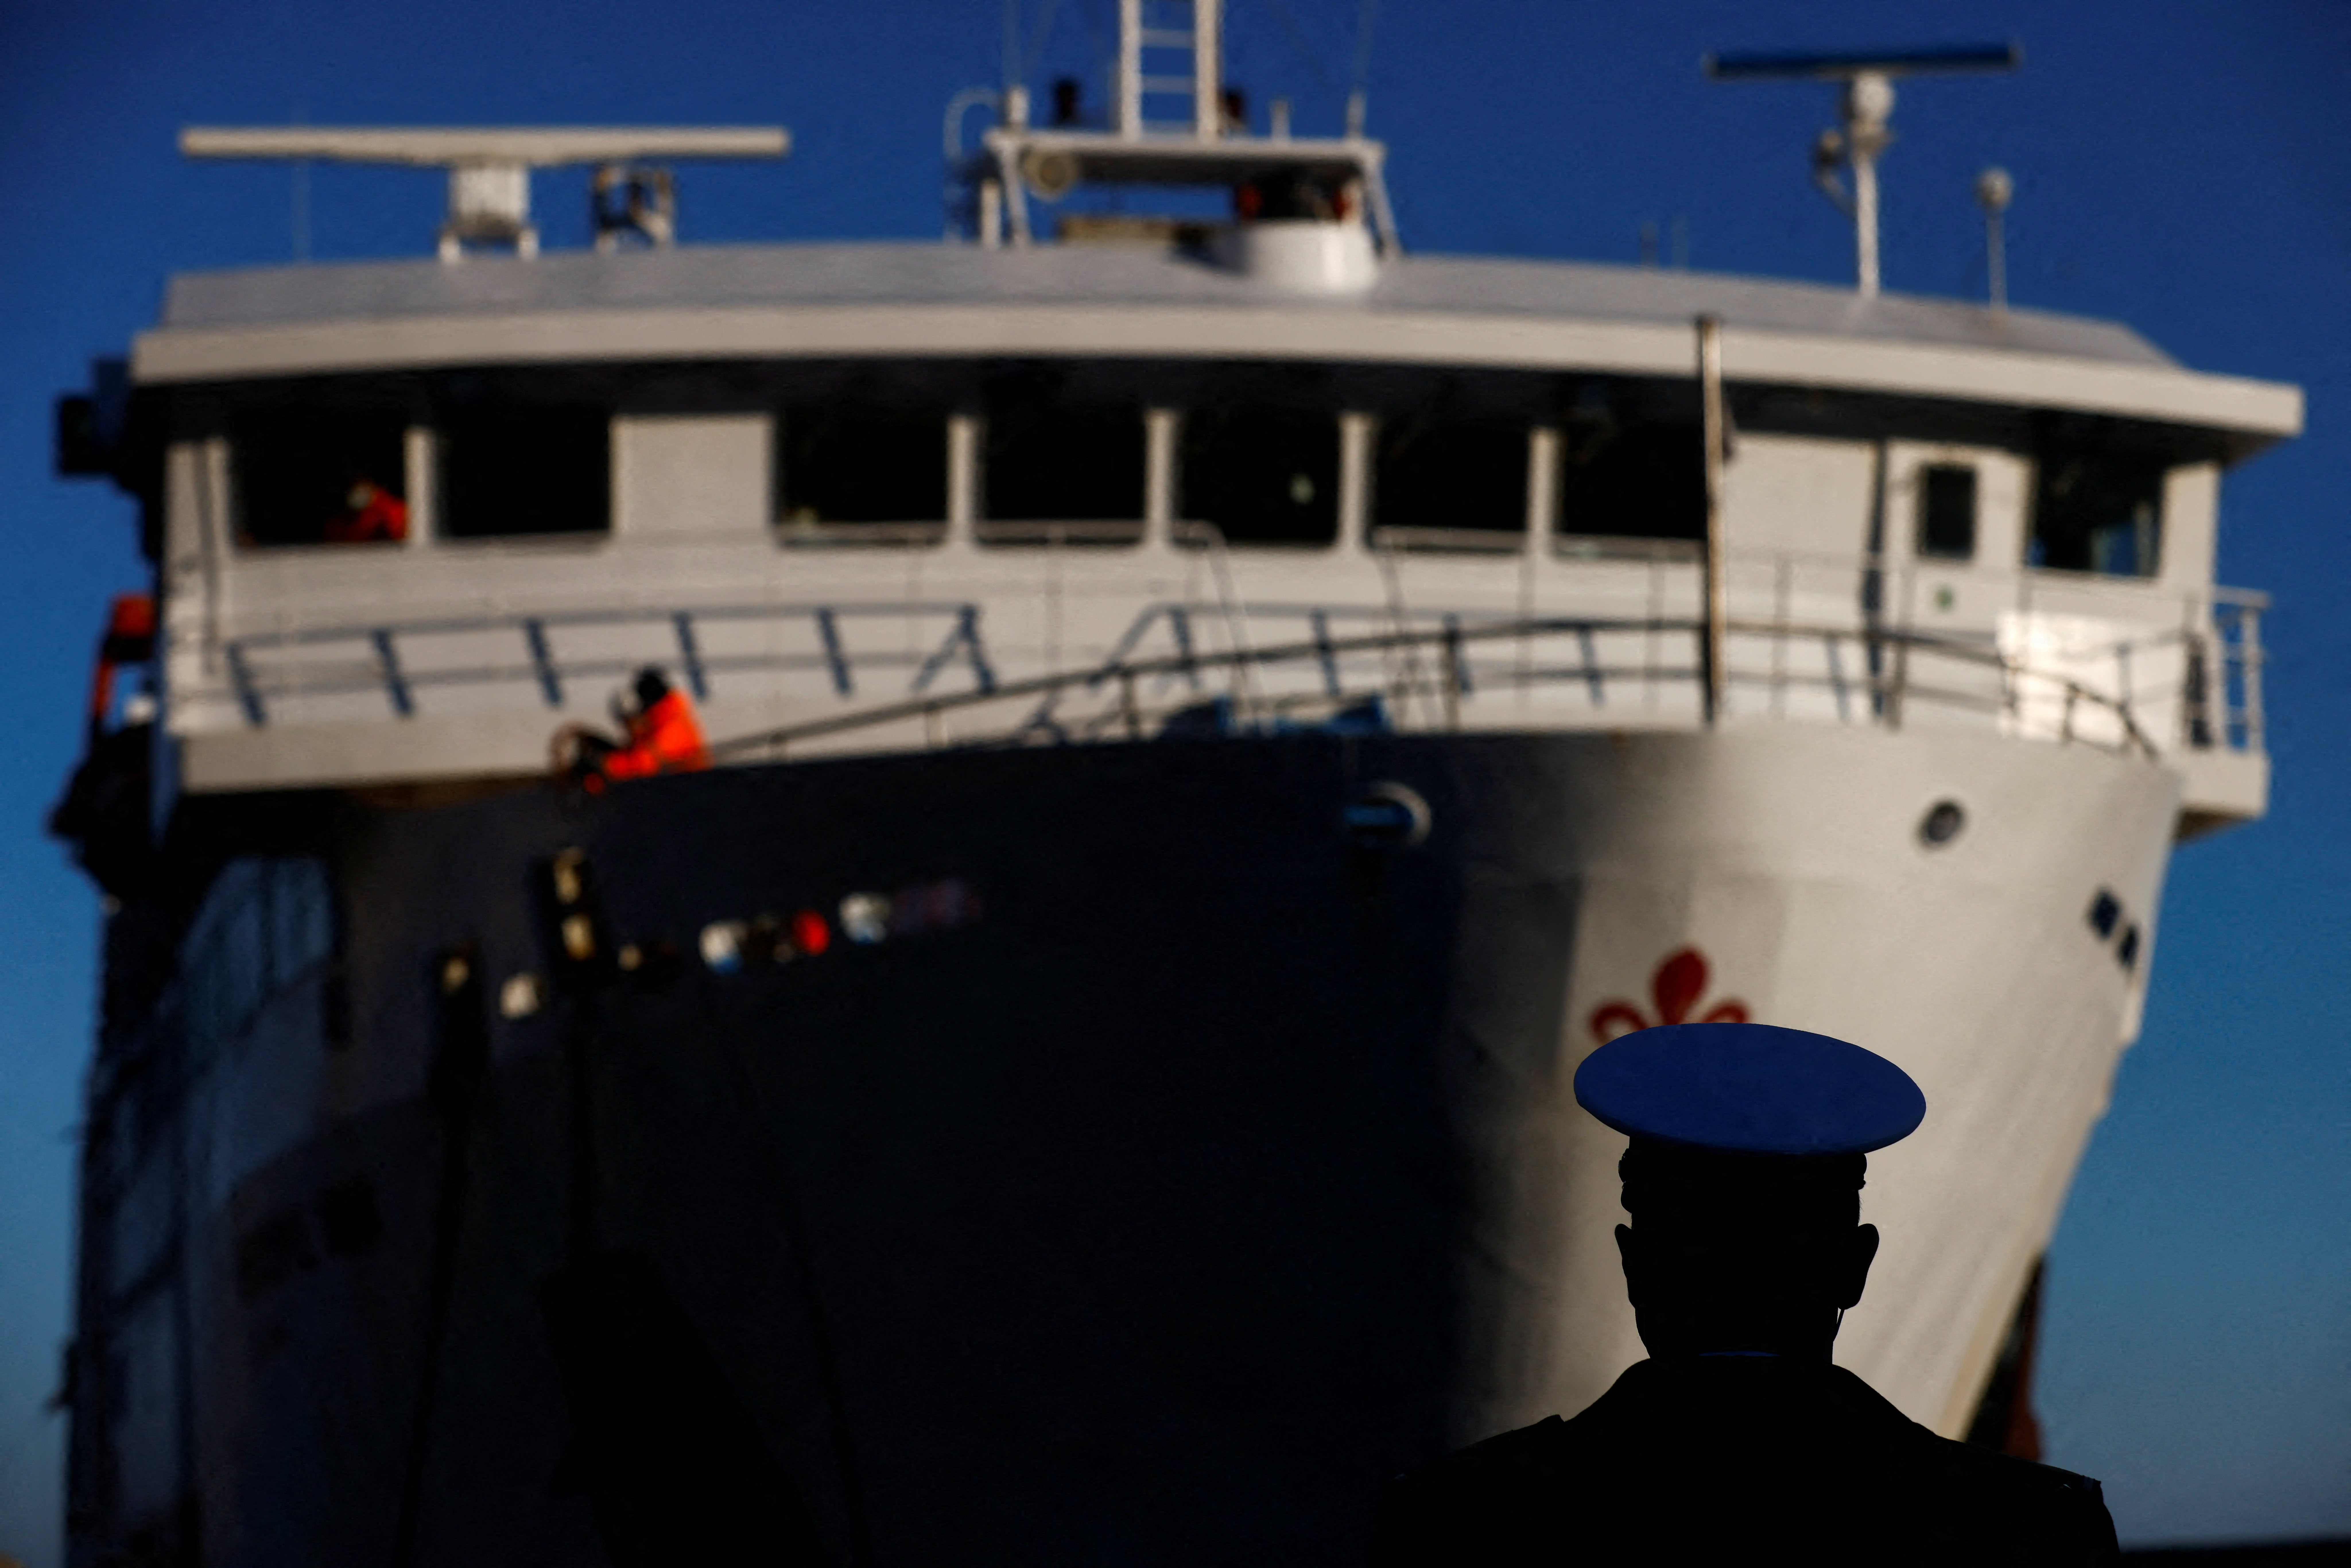 Član pristaniških oblasti opazuje, kako trajekt prispe na dan desete obletnice brodoloma Costa Concordia, v katerem je umrlo 32 ljudi, potem ko se je prevrnila in potonila ob obali, na otoku Giglio, Italija, 13. januarja 2022. REUTERS/Yara Nardi